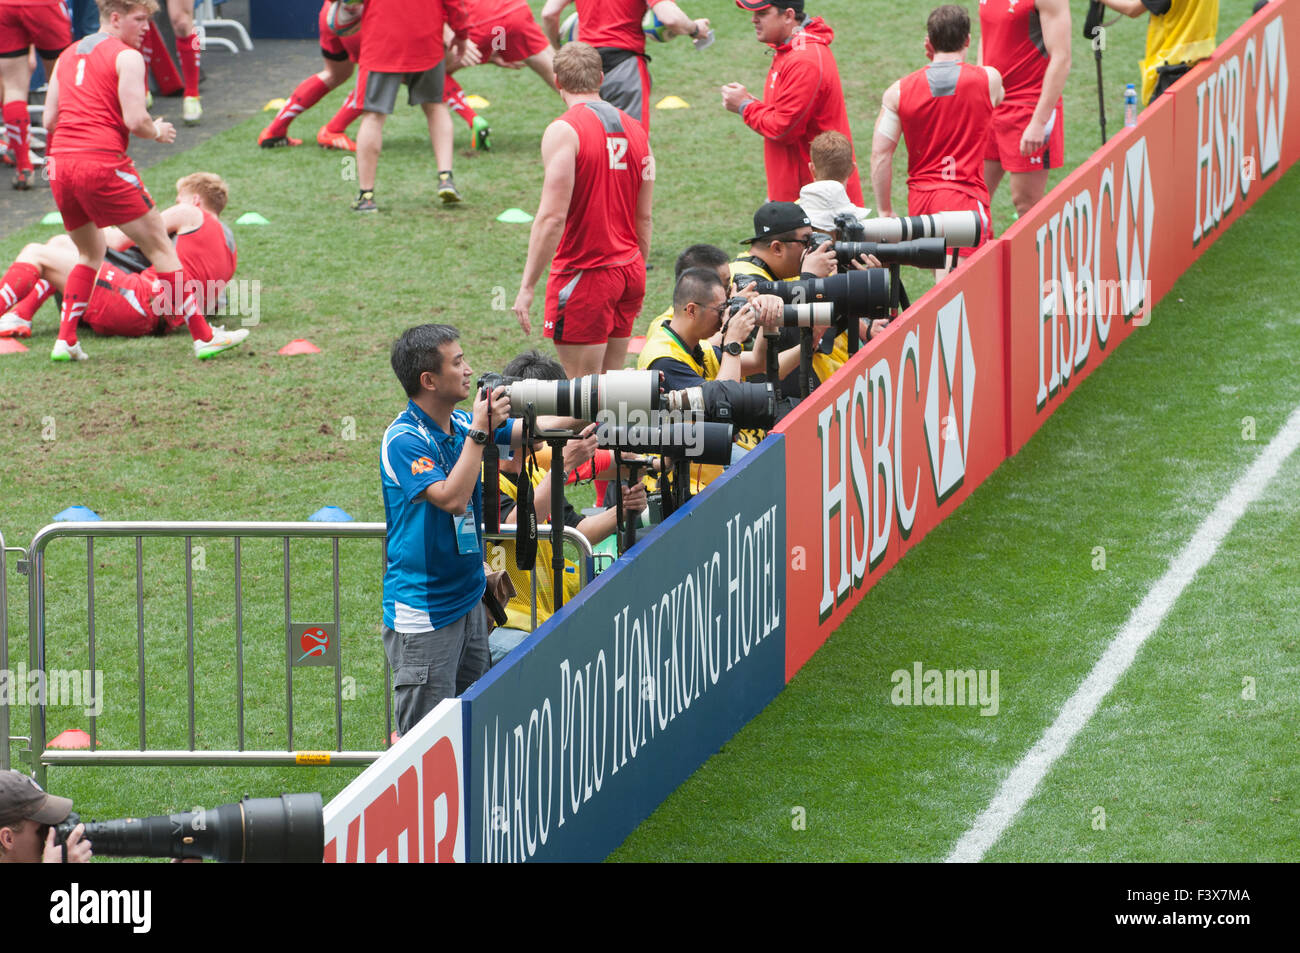 Hong Kong Sevens Rugby media fotografi Foto Stock